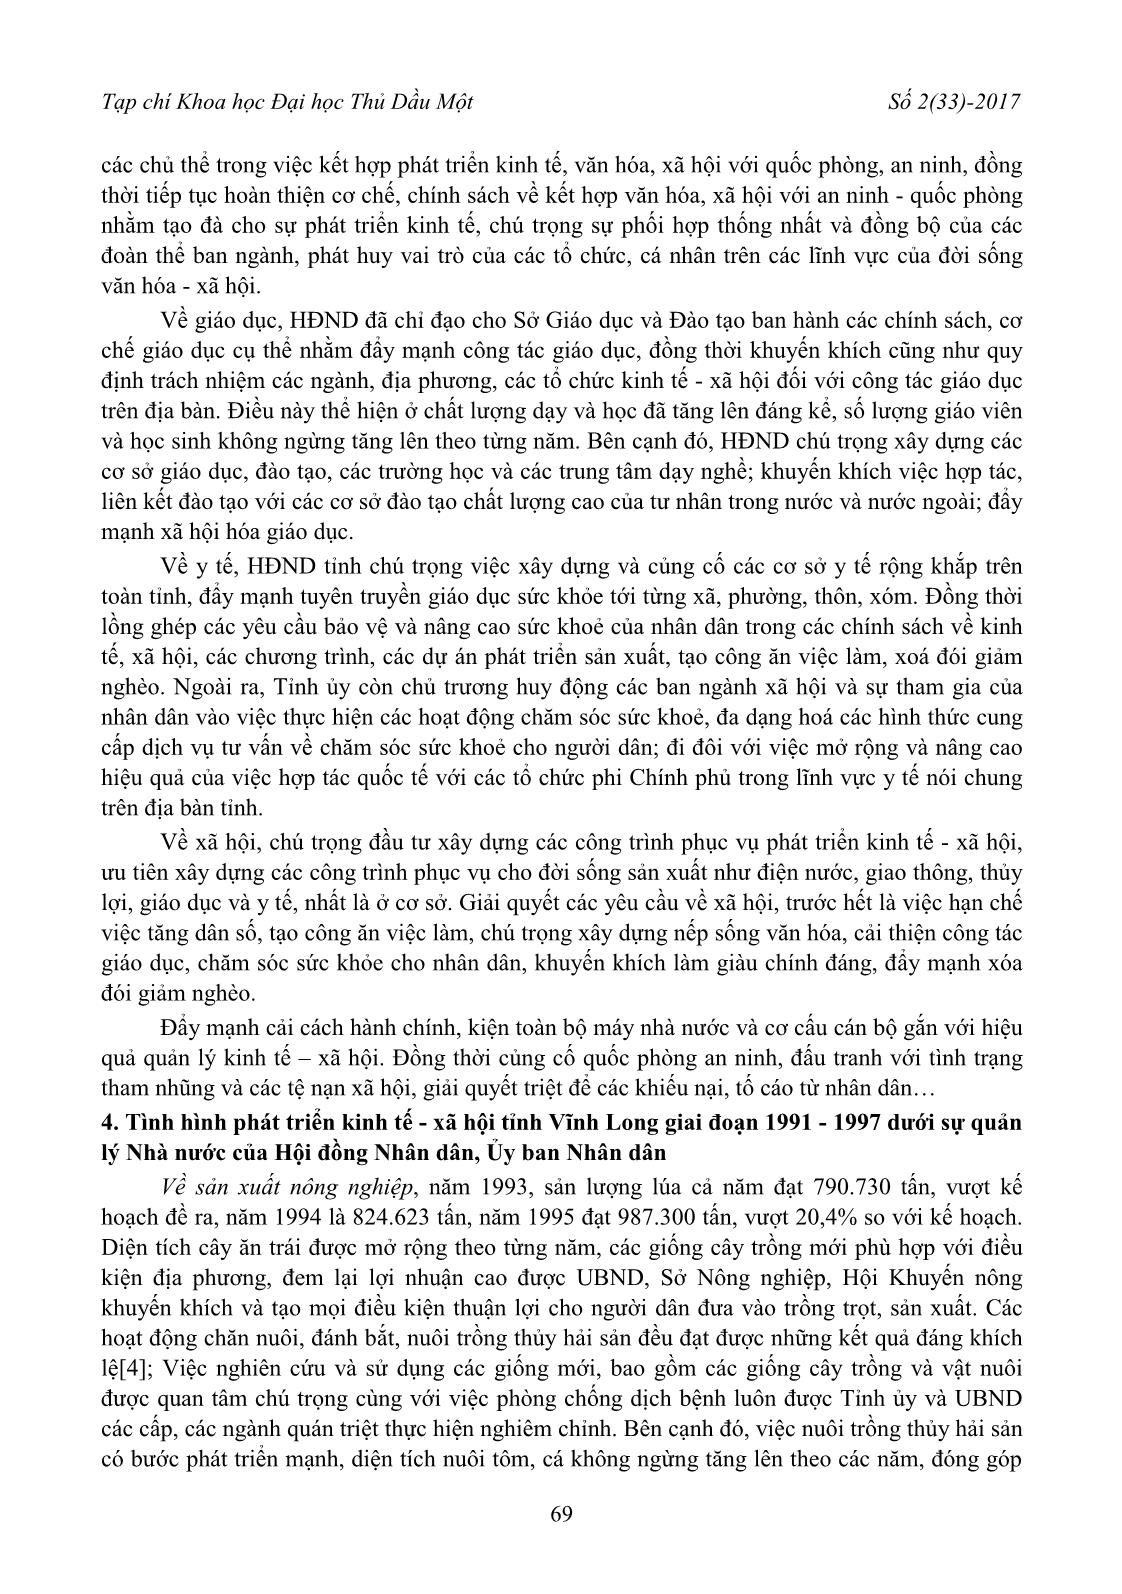 Hoạt động của hội đồng nhân dân và ủy ban nhân dân tỉnh Vĩnh Long những năm đầu tái lập tỉnh (1991 - 1997) trang 5